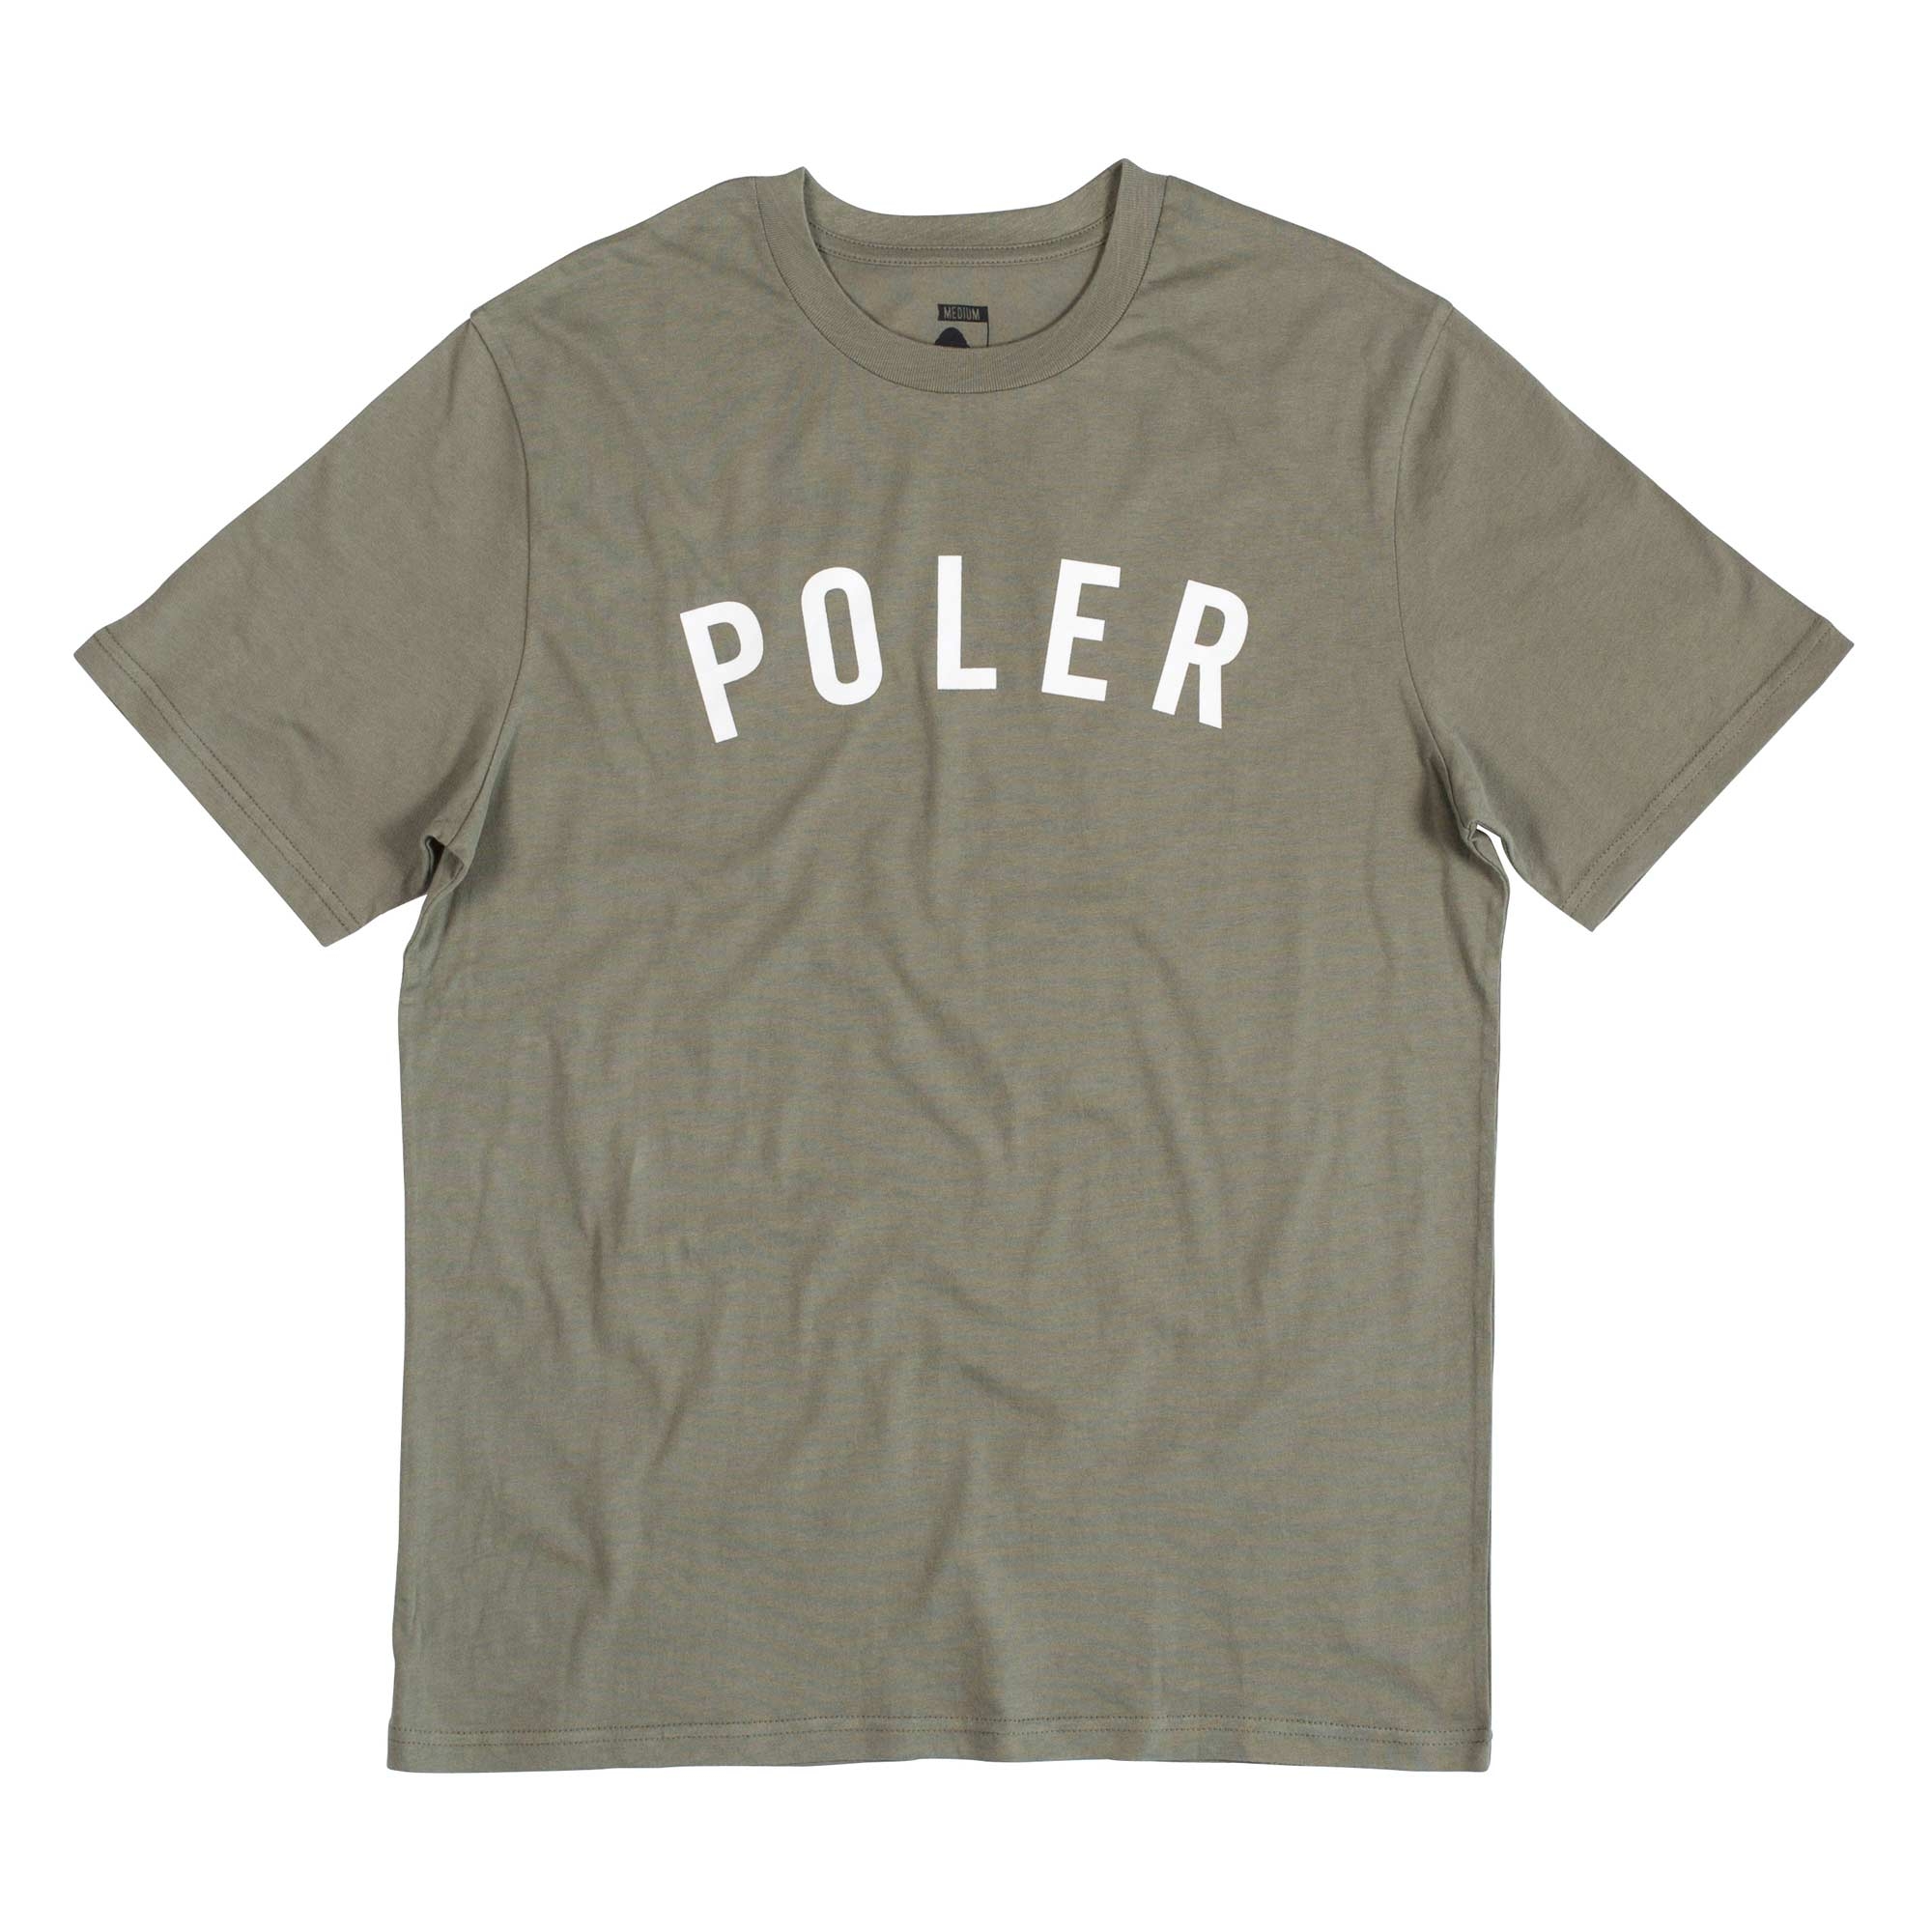 POLER T-Shirt STATE olive